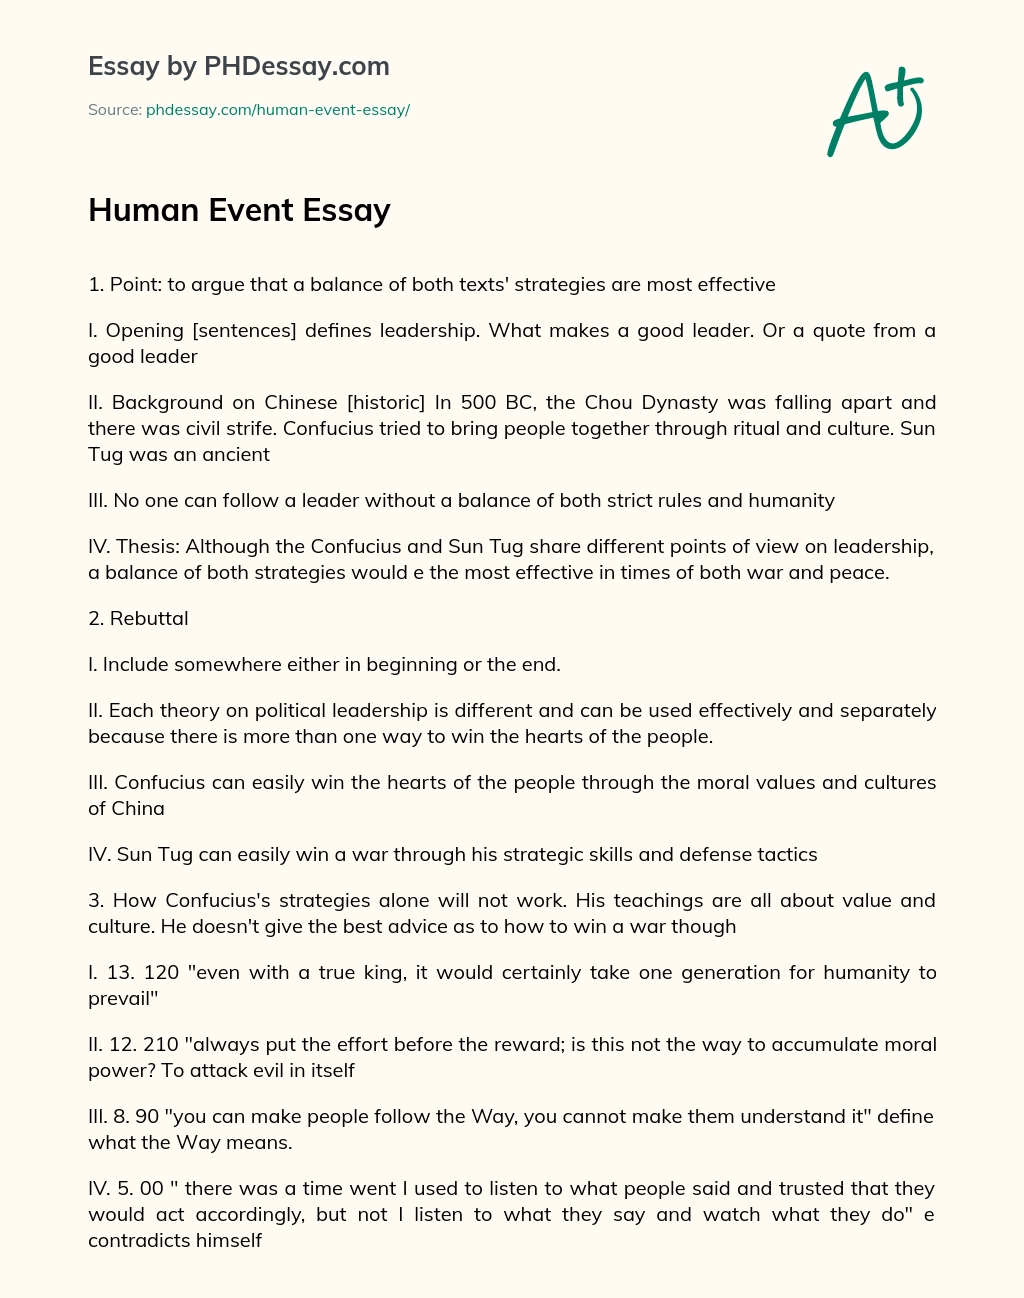 Human Event Essay essay